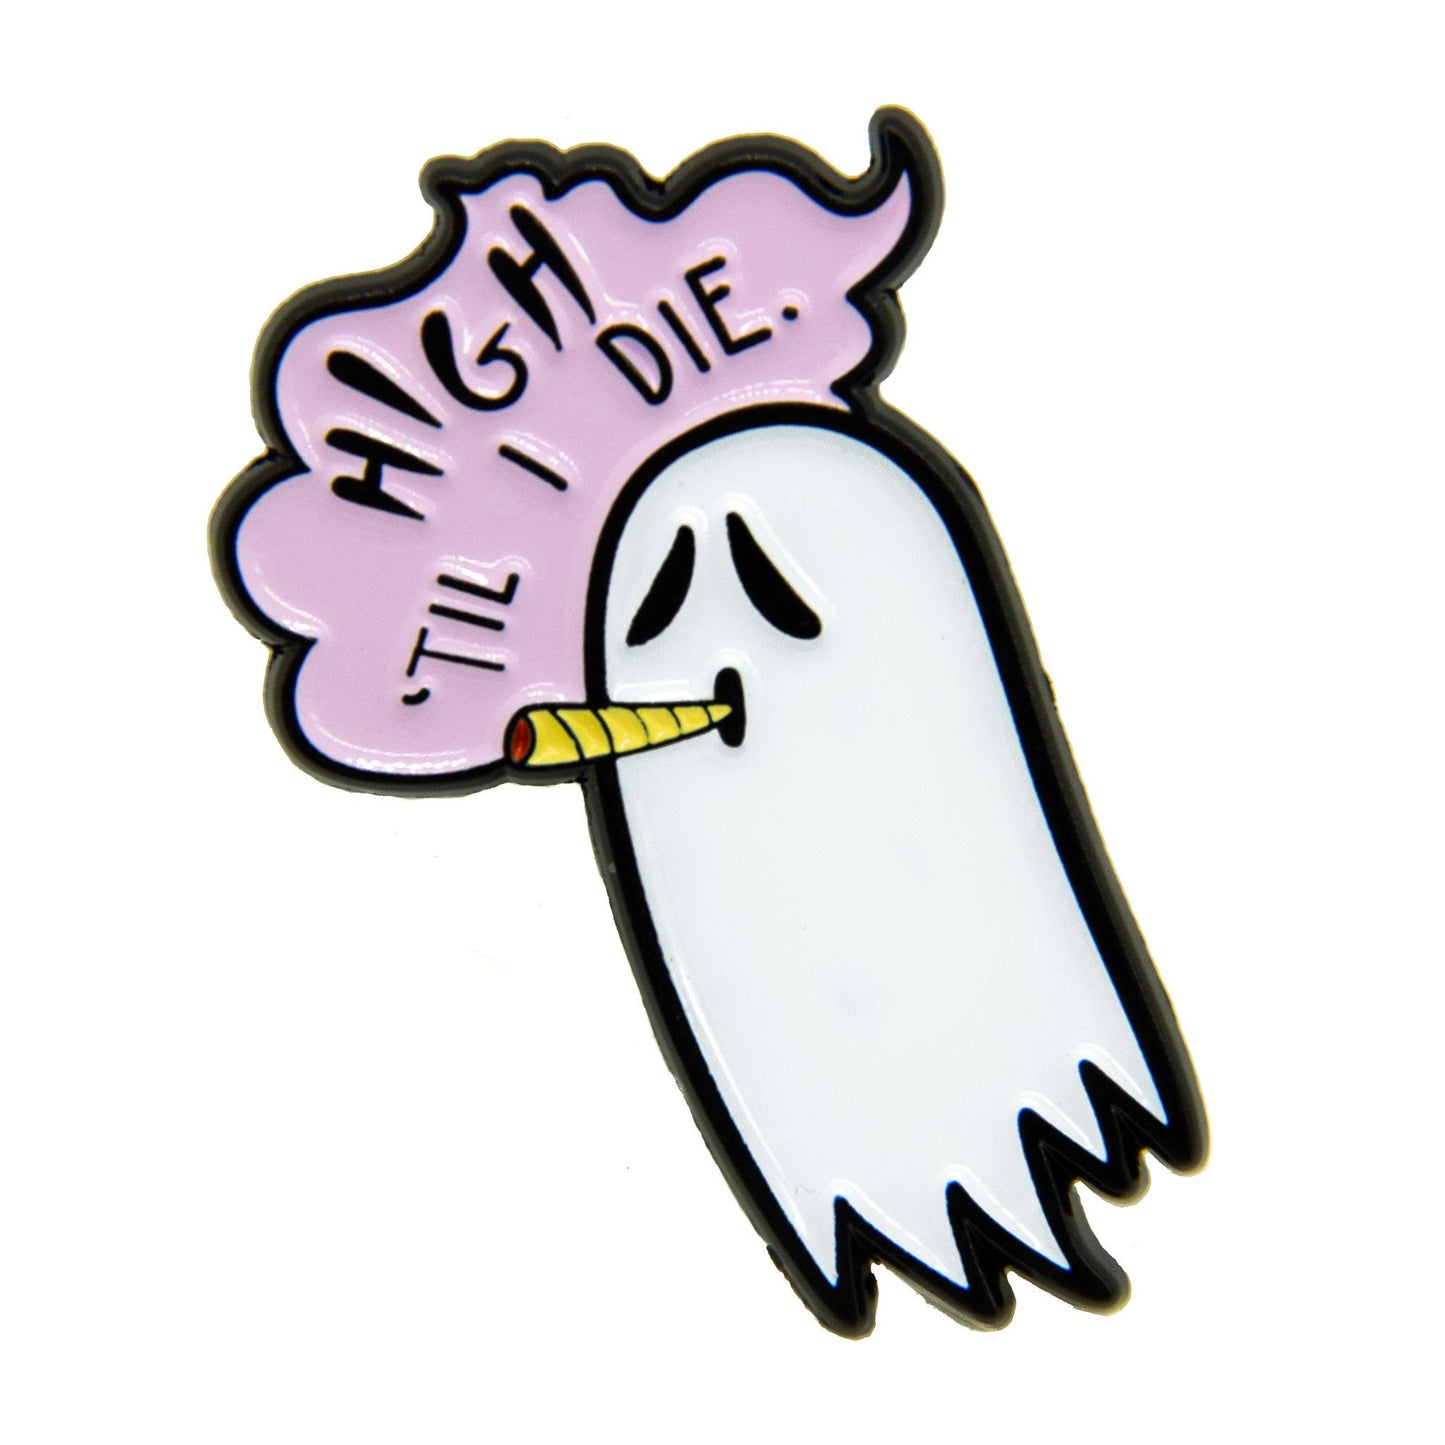 Ectogasm - "High Til I Die" Pot Smoking Ghost Enamel Pin